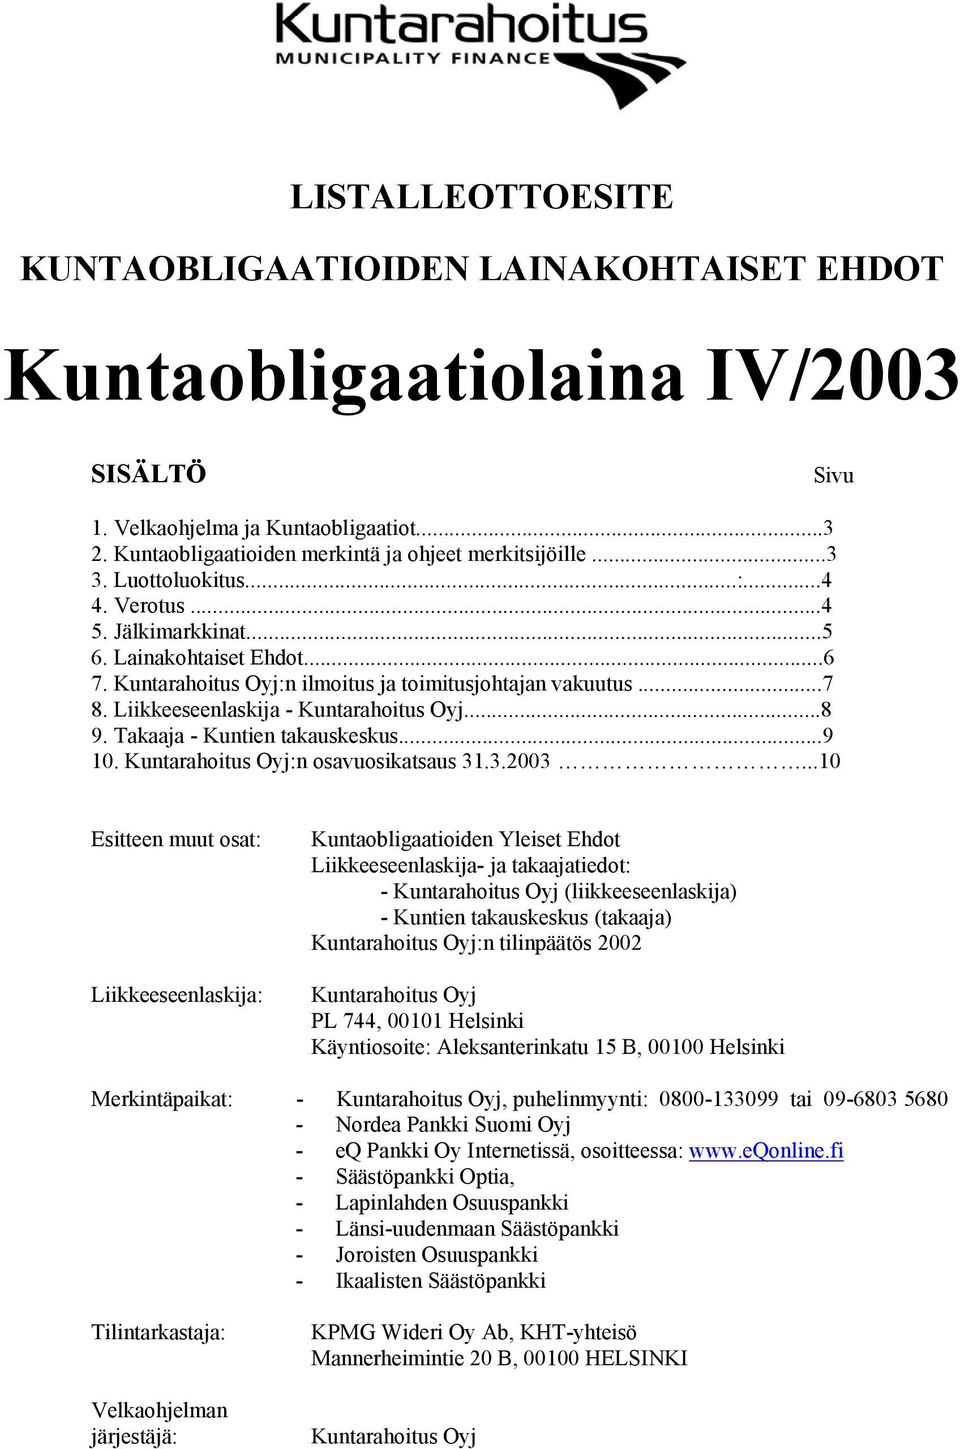 Liikkeeseenlaskija - Kuntarahoitus Oyj...8 9. Takaaja - Kuntien takauskeskus...9 10. Kuntarahoitus Oyj:n osavuosikatsaus 31.3.2003.